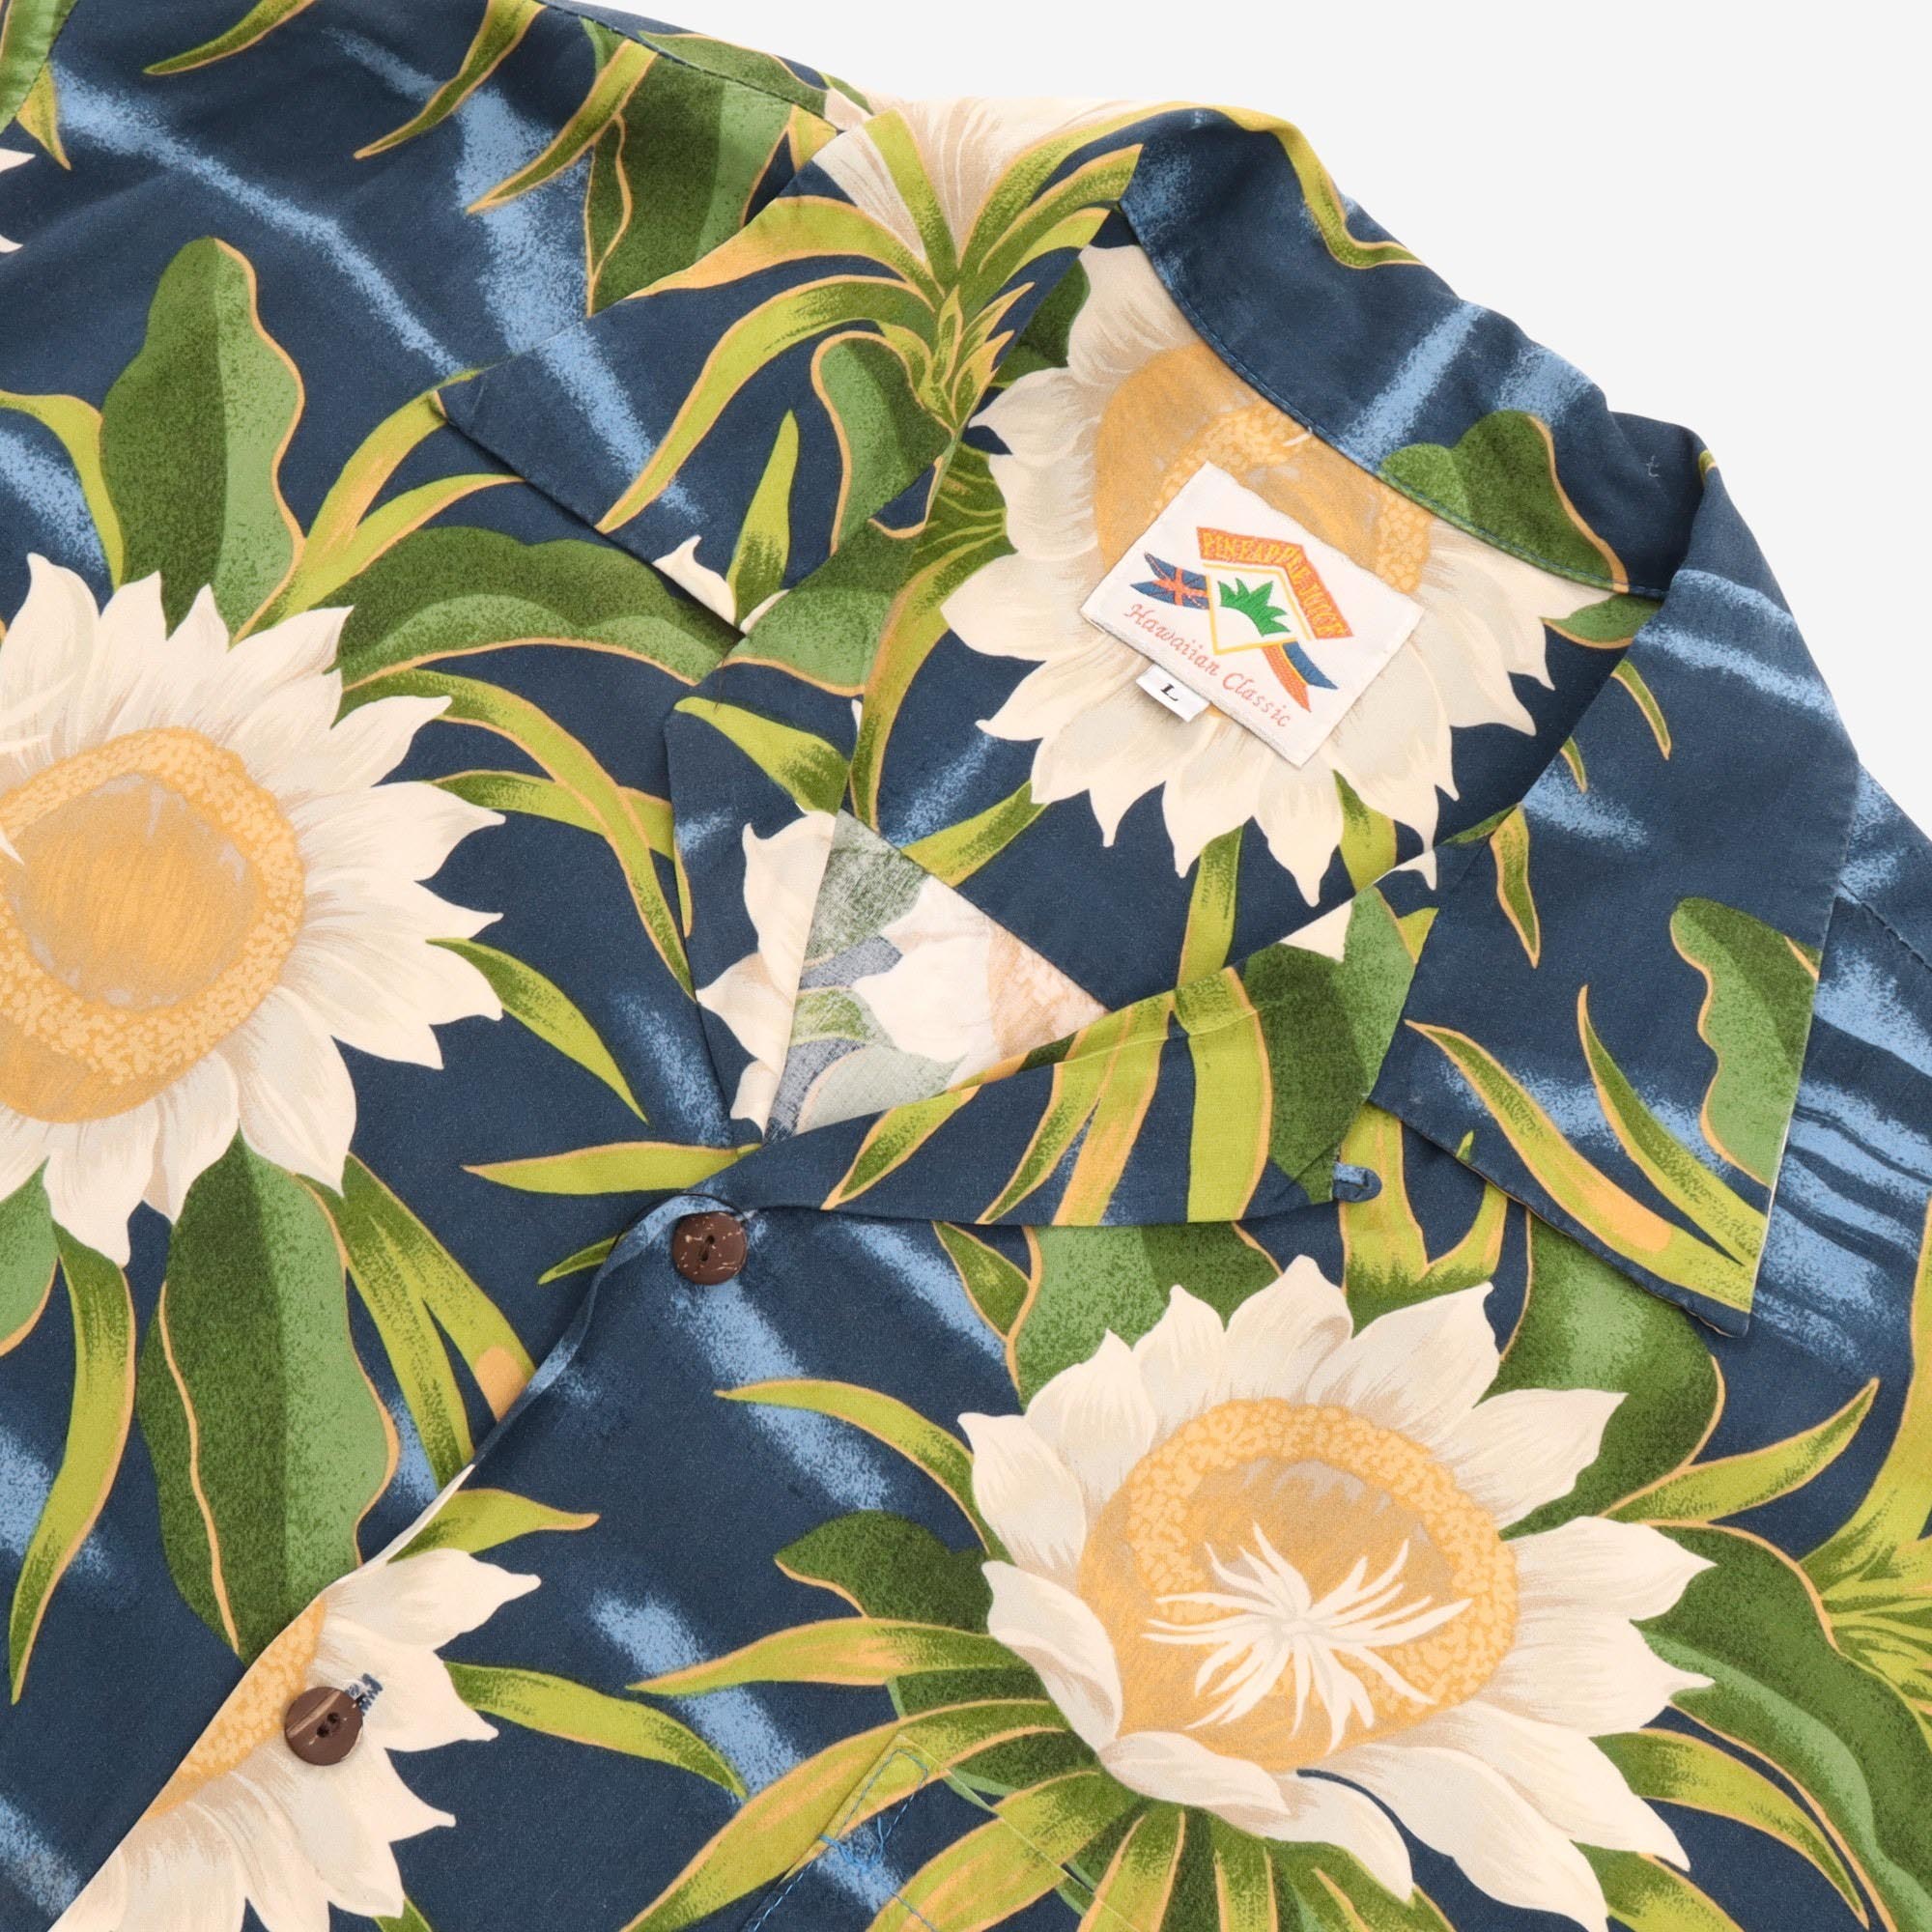 Hawaiian Classic Shirt